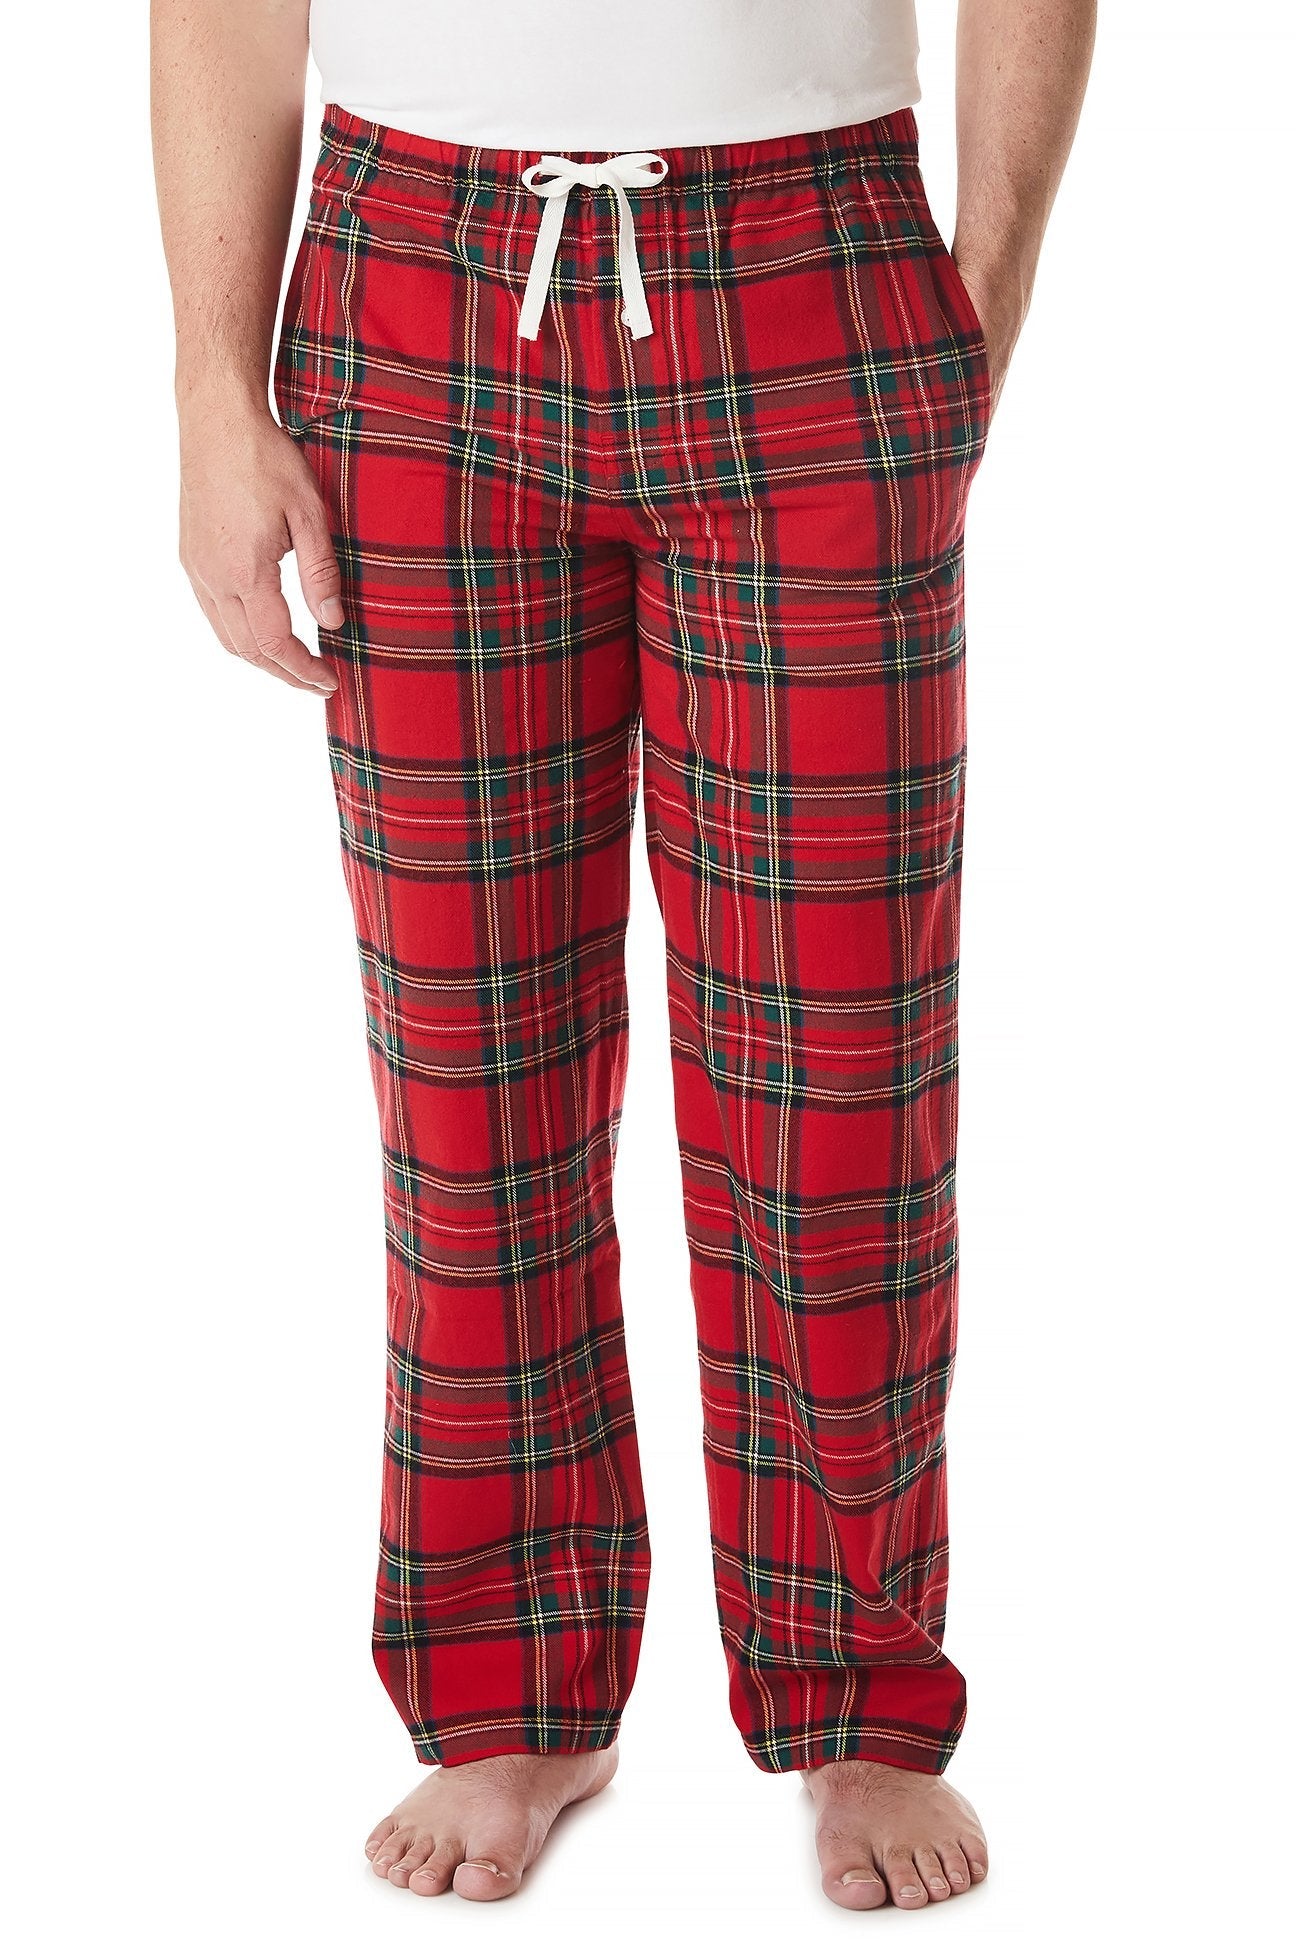 Men’s Royal Stewart Tartan Silk Pajama Pant with Stripe, S